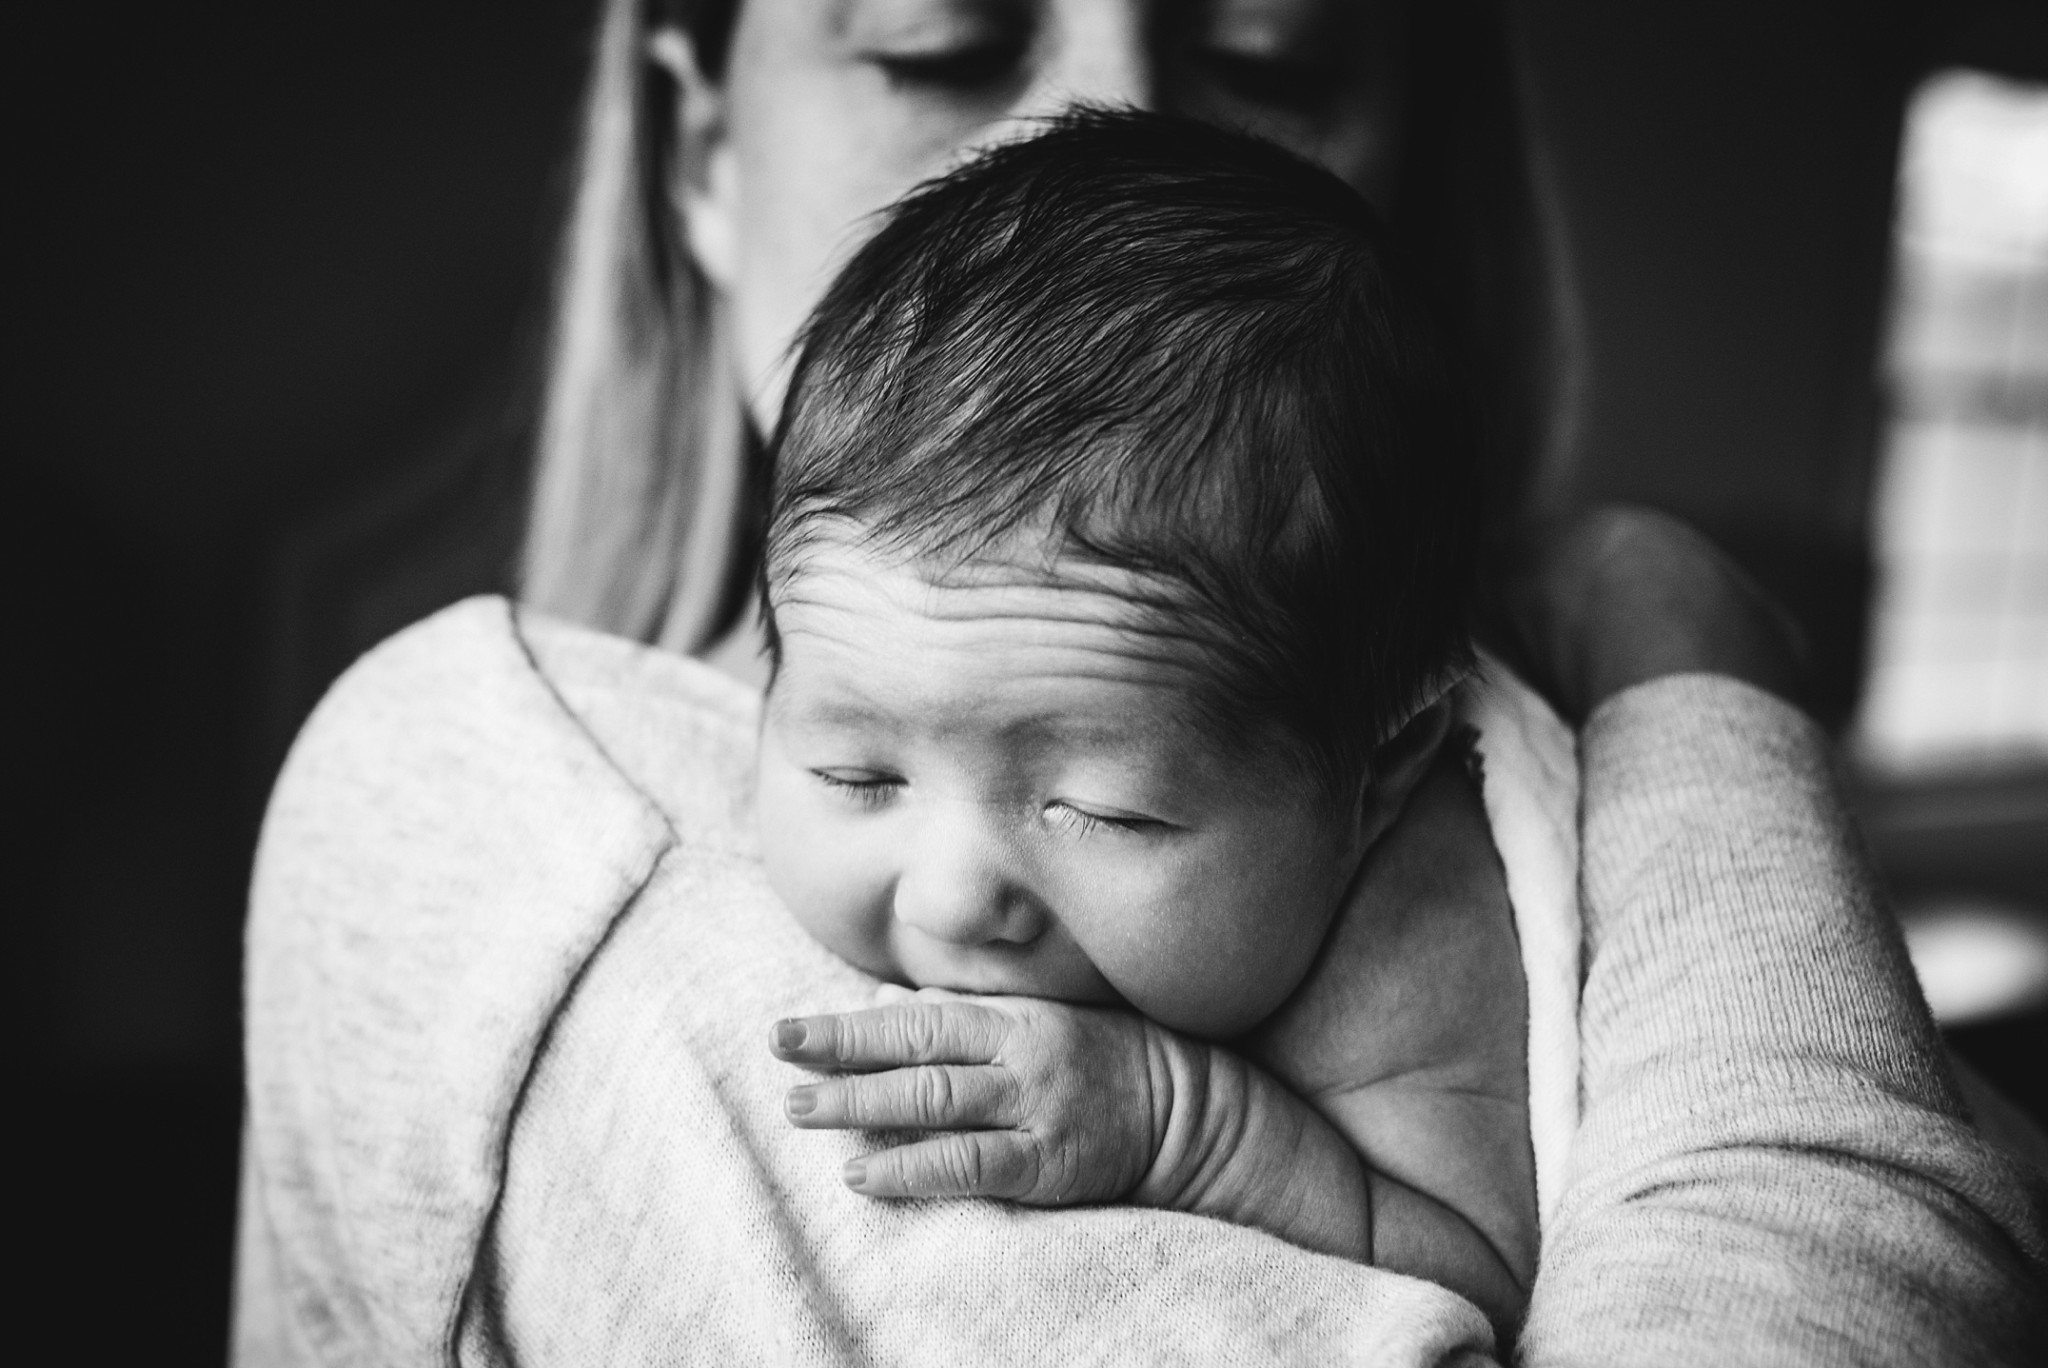 Jen Bilodeau - Lifestyle Newborn Photography 